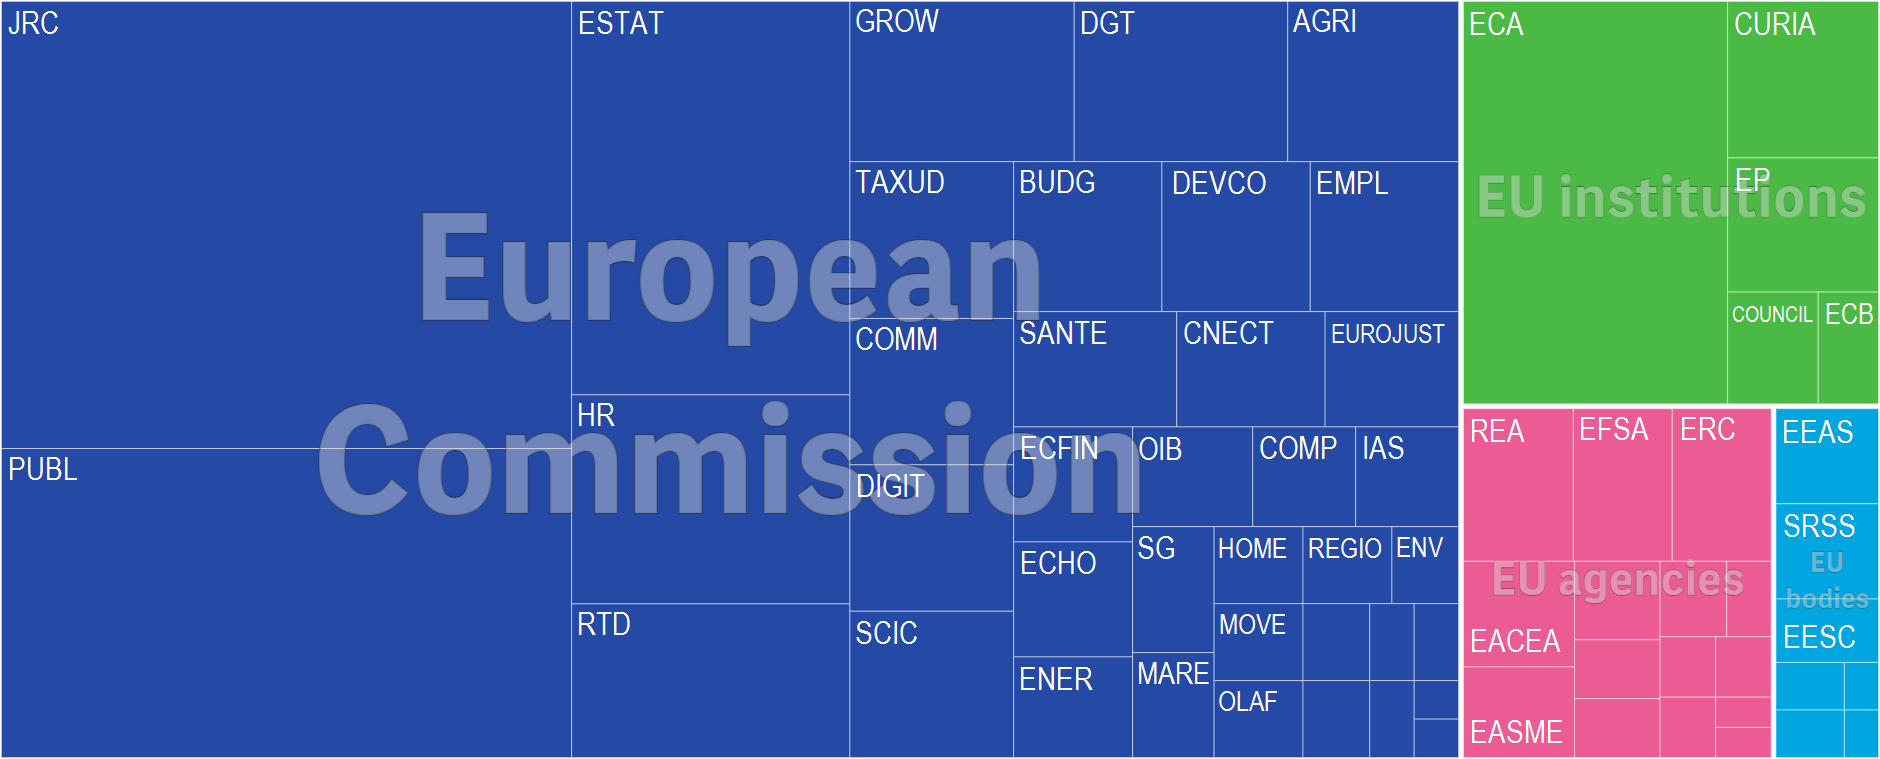 Participants came from 5 EU institutions, 15 EU agencies and 7 EU bodies. 